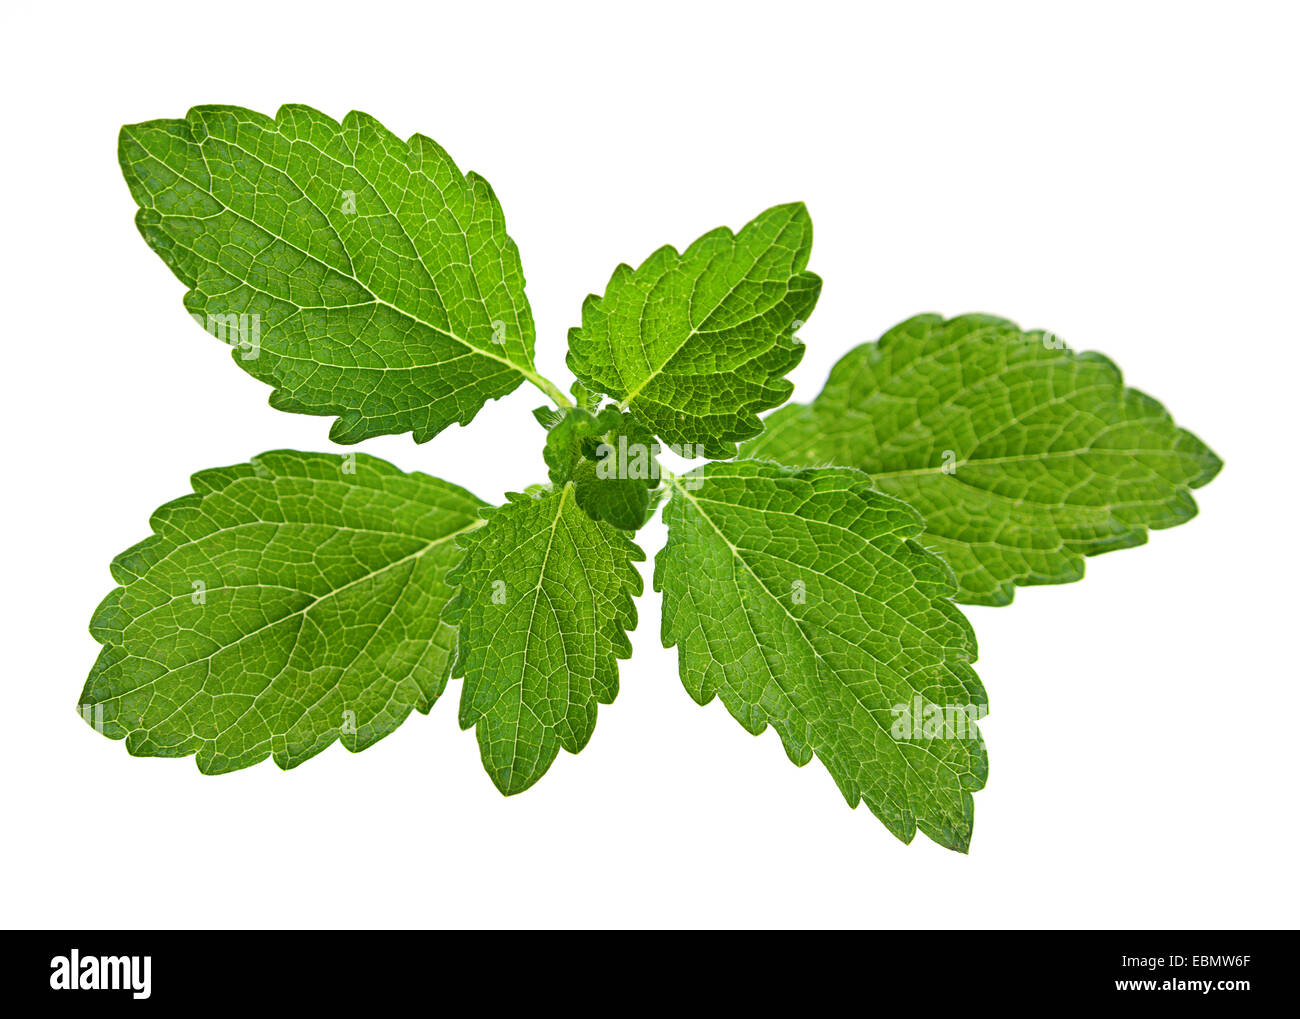 Lemon melissa leaf closeup isolated on white Stock Photo